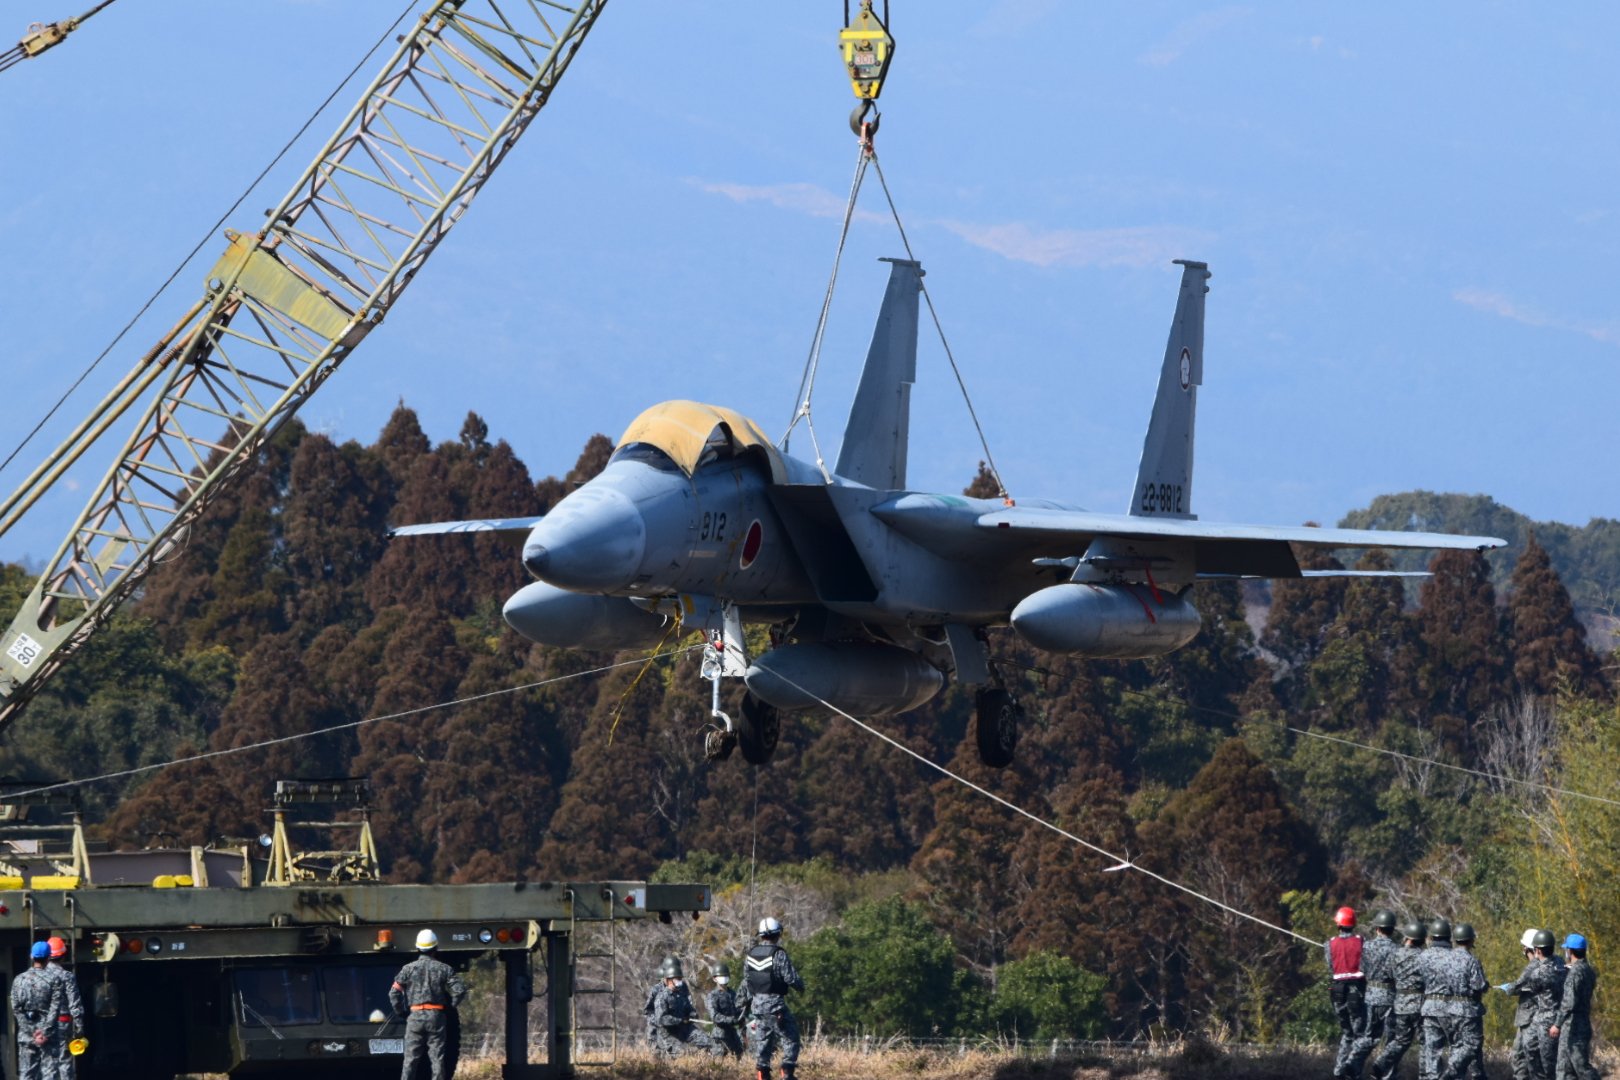 Bunt samolotów: japoński myśliwiec F-15J chciał uciec z bazy lotniczej podczas alarmu